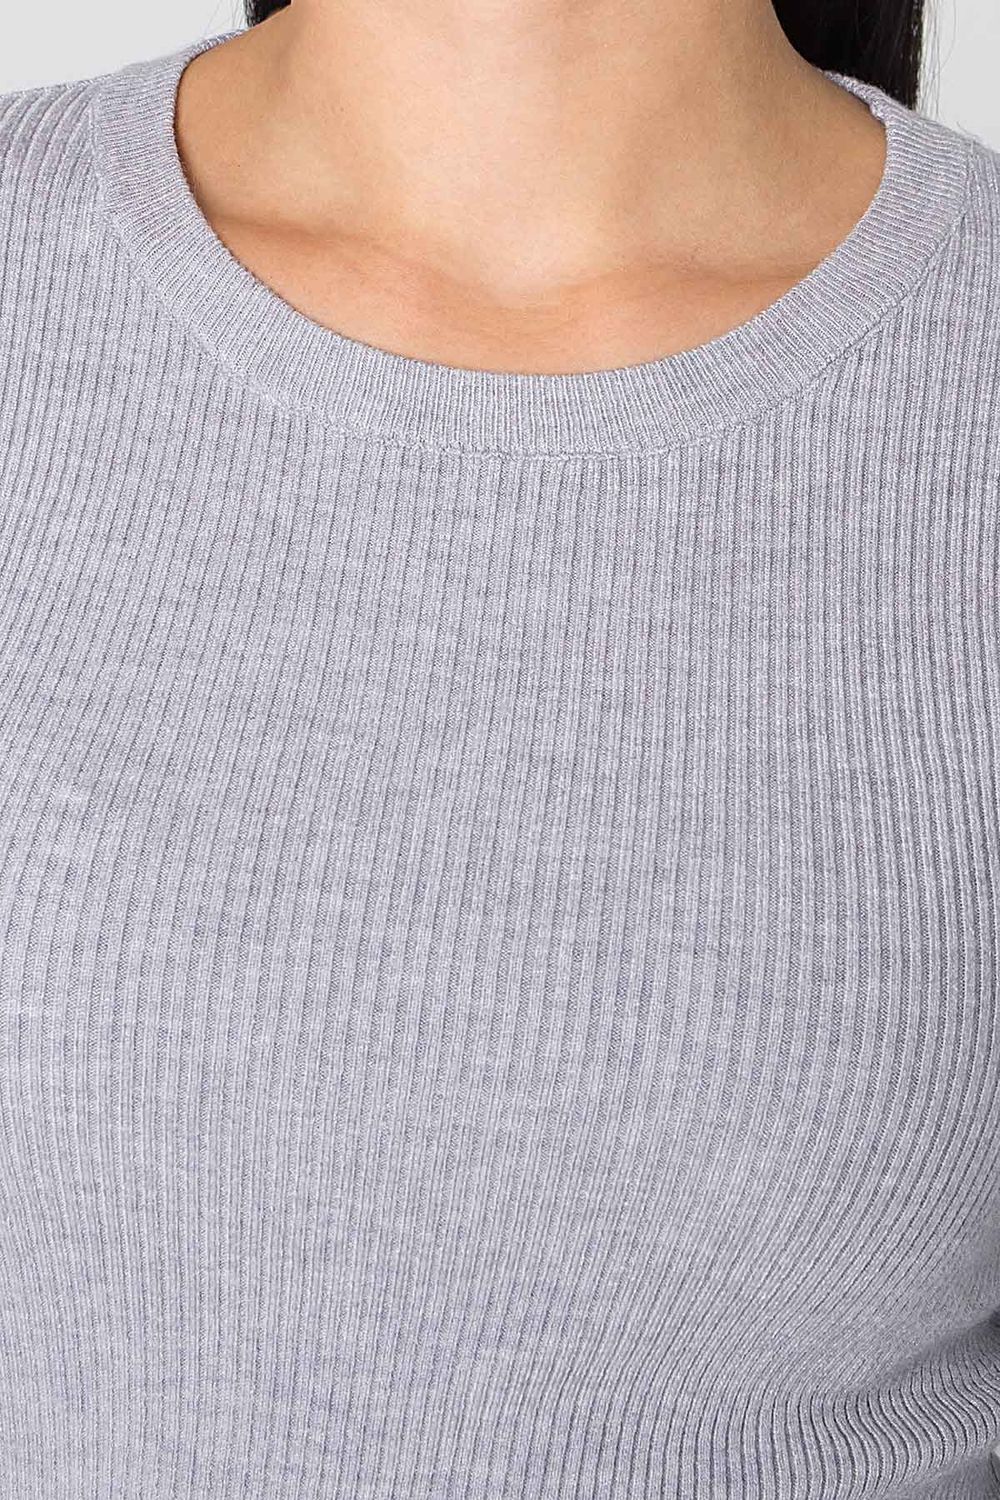 Жіноча базова кофточка джемпер сірого кольору - фото